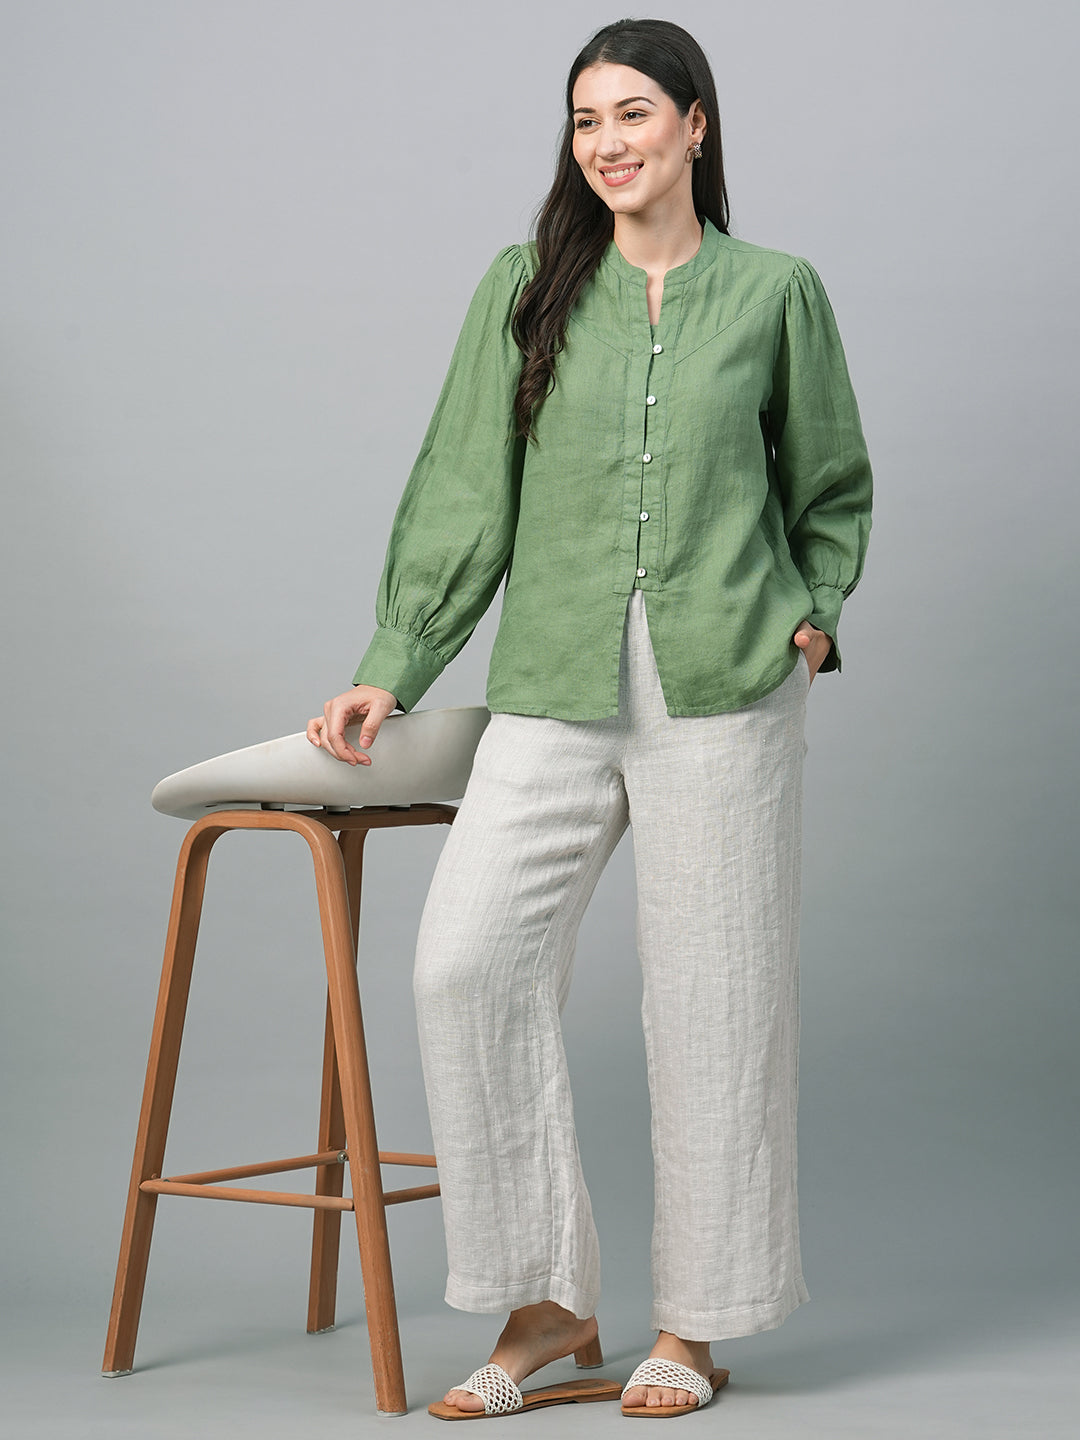 Women's Green Linen Regular Fit Blouse